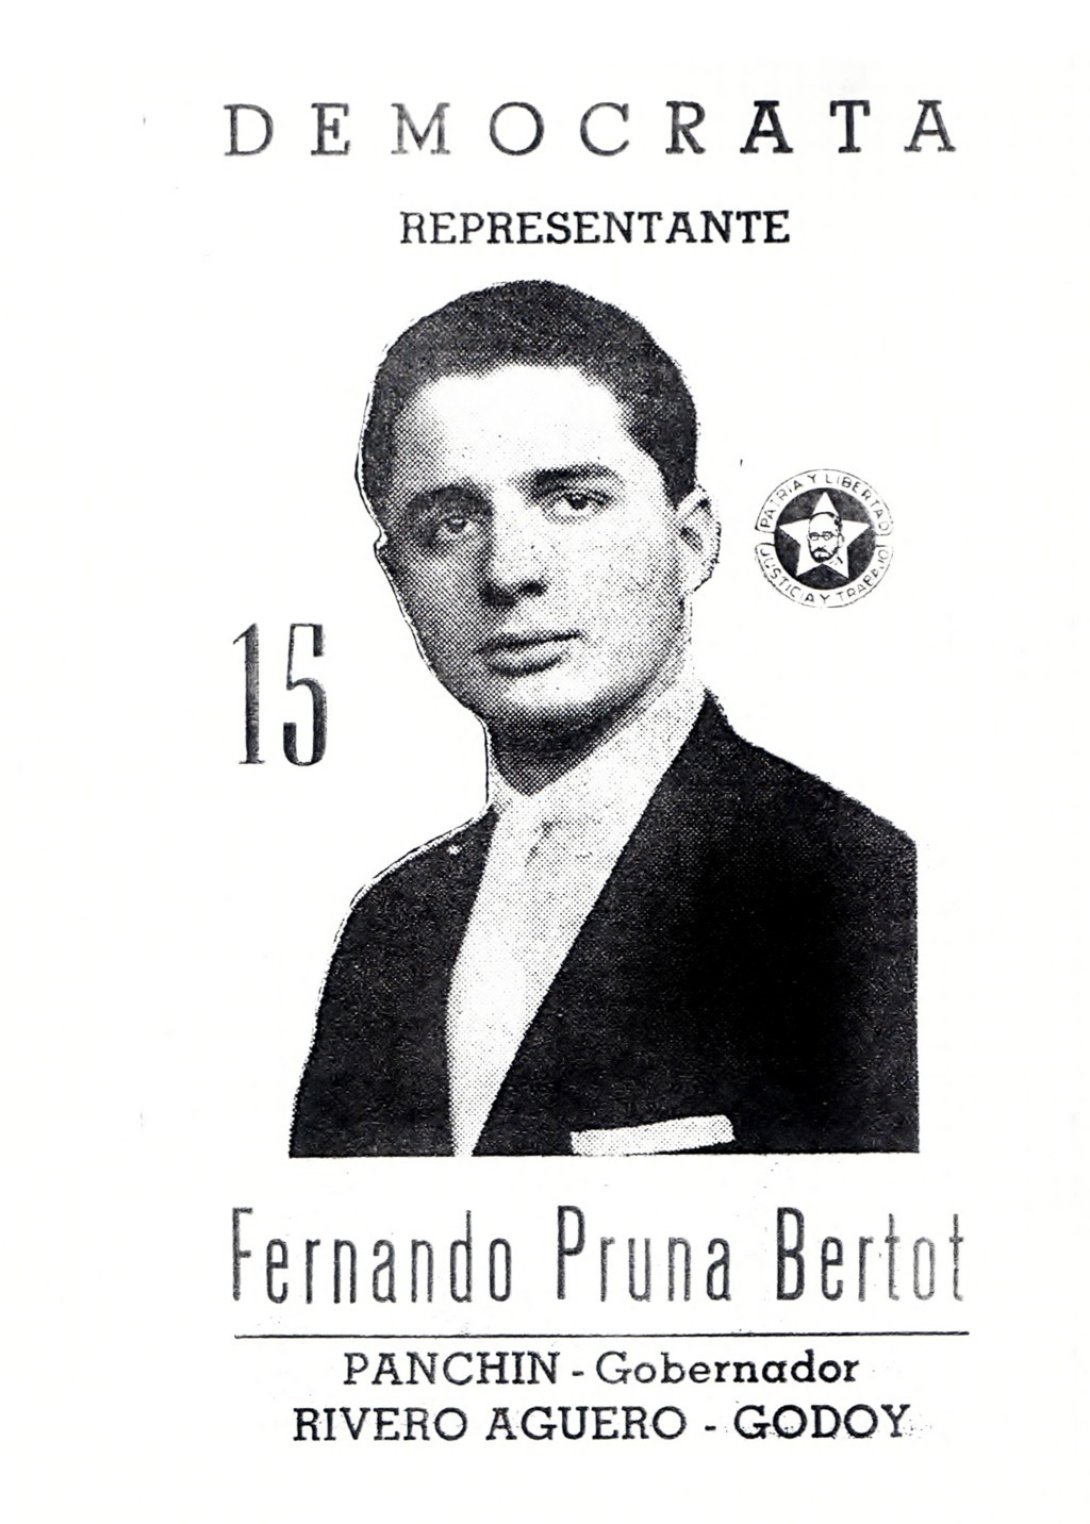  Fernando Pruna, candidato a las elecciones legislativas de 1958, por el Partido Demócrata.